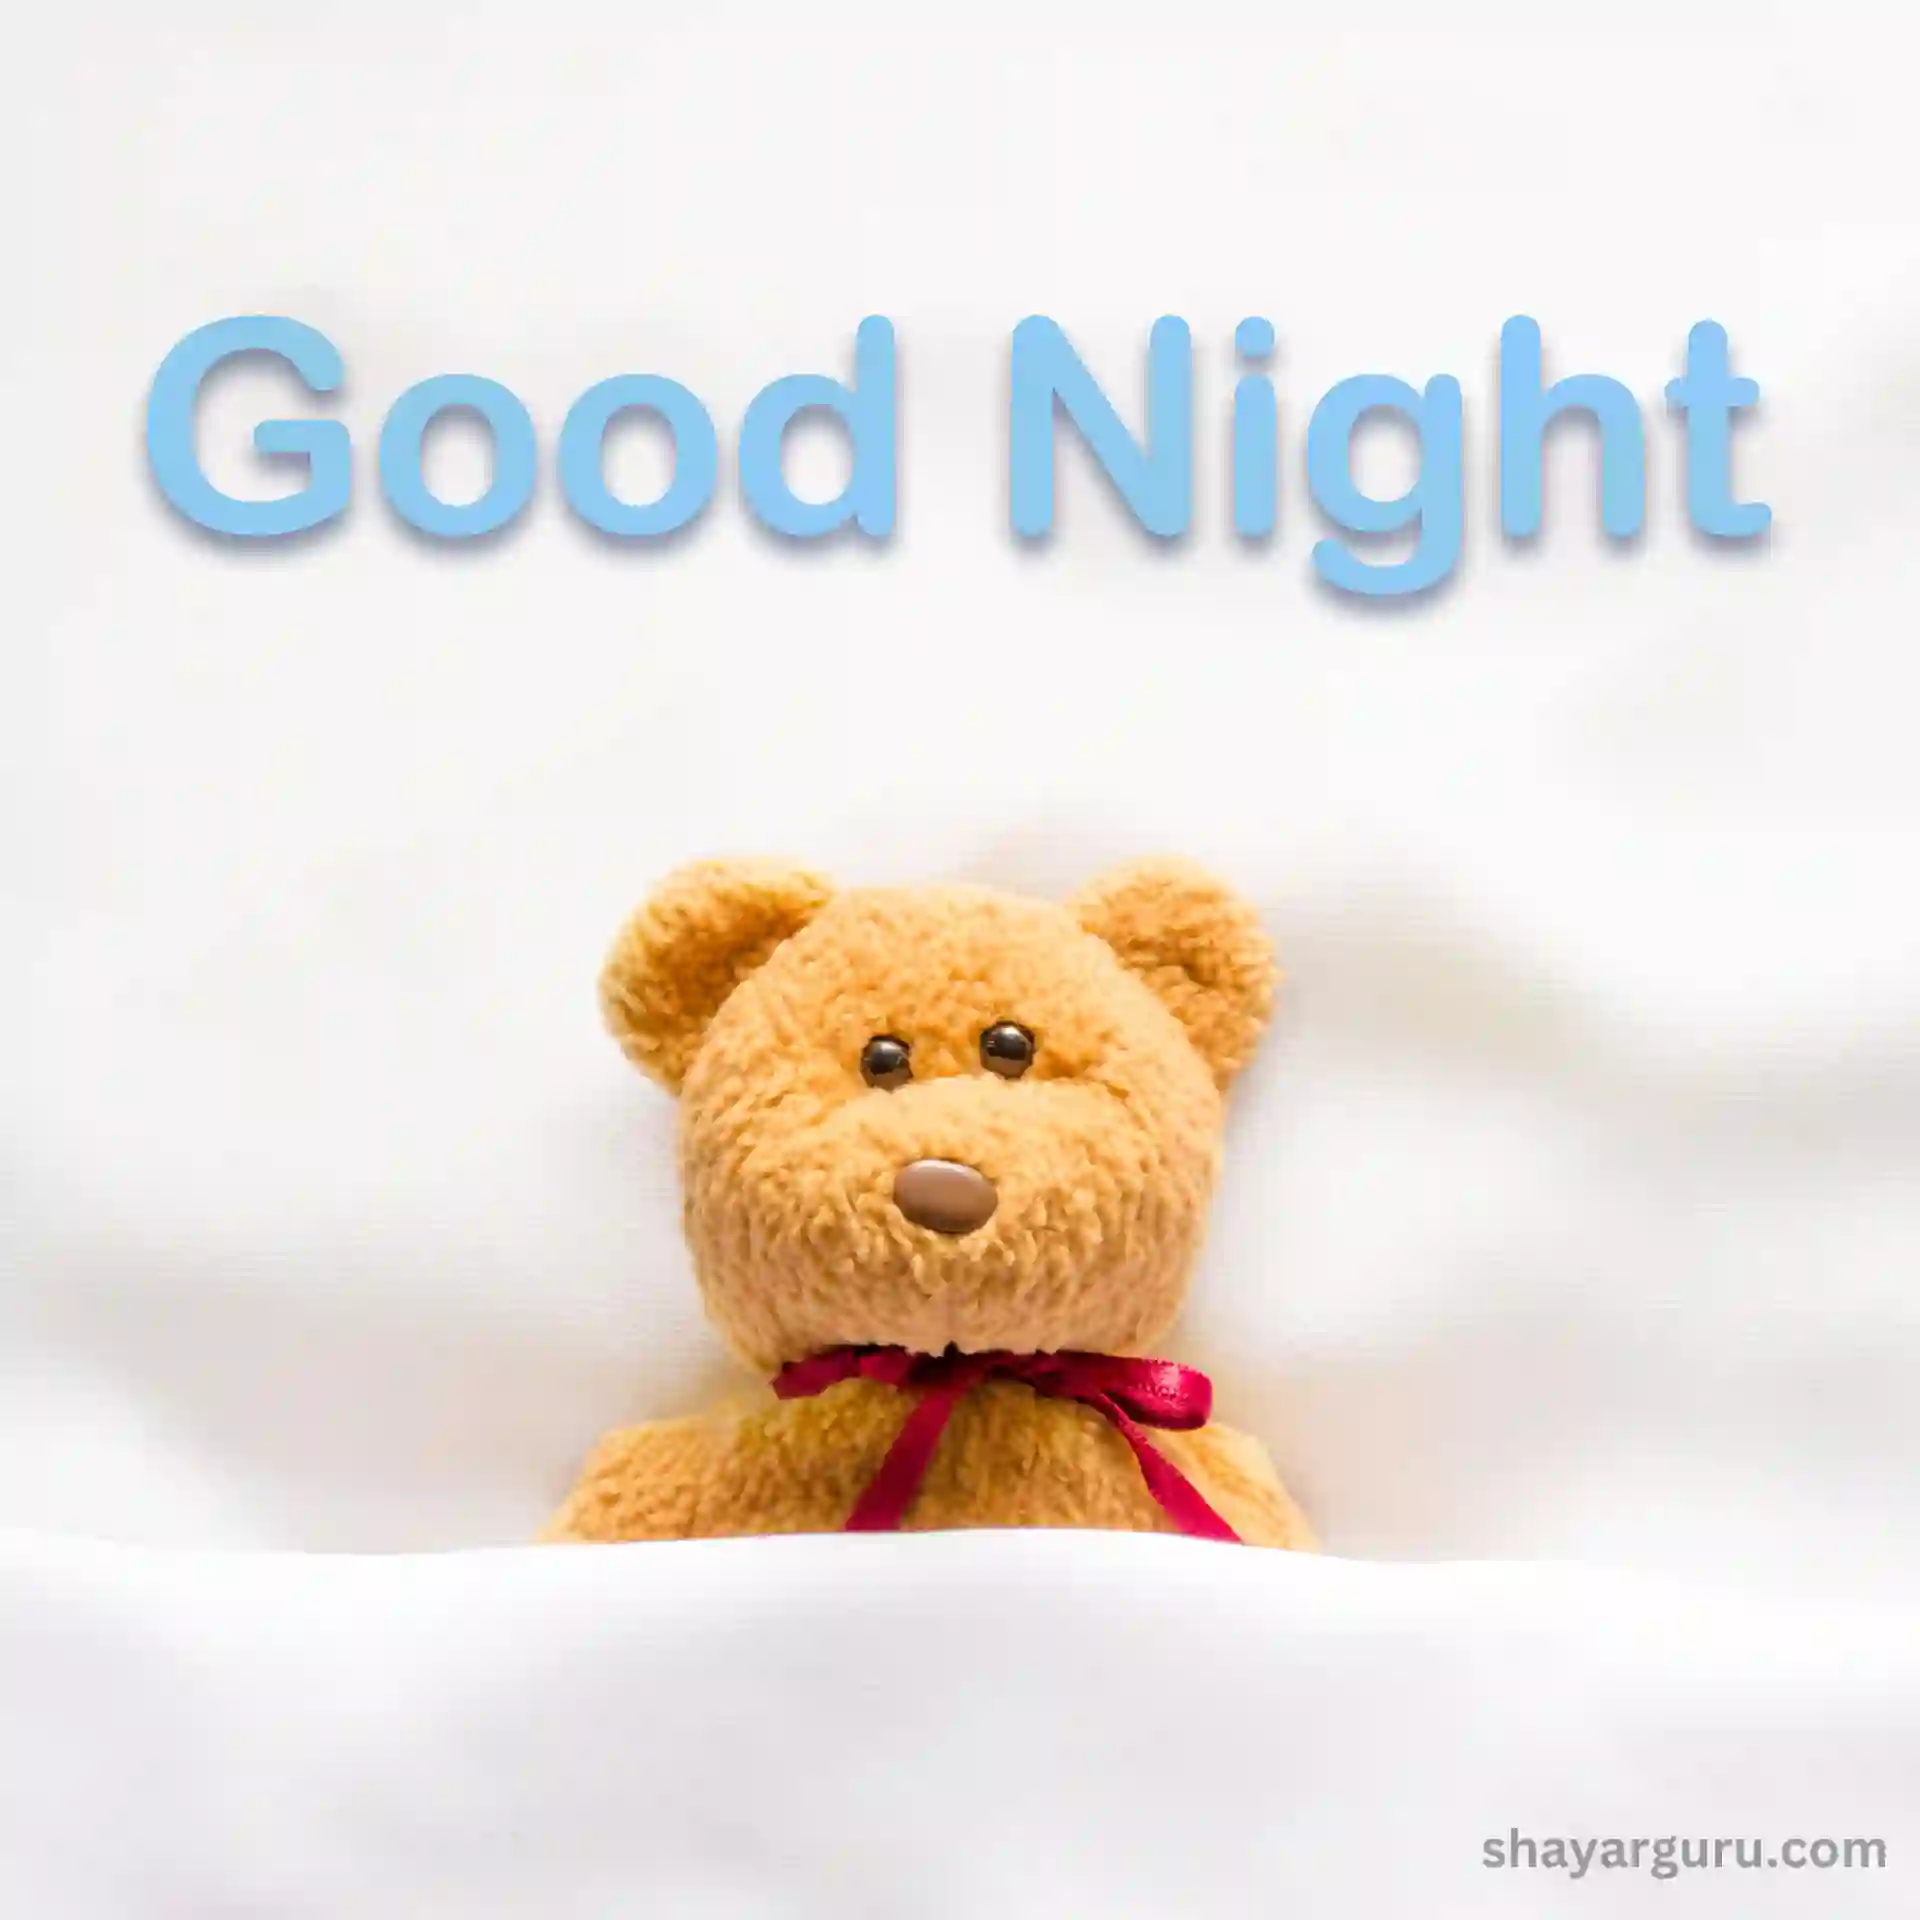 Good Night Teddy